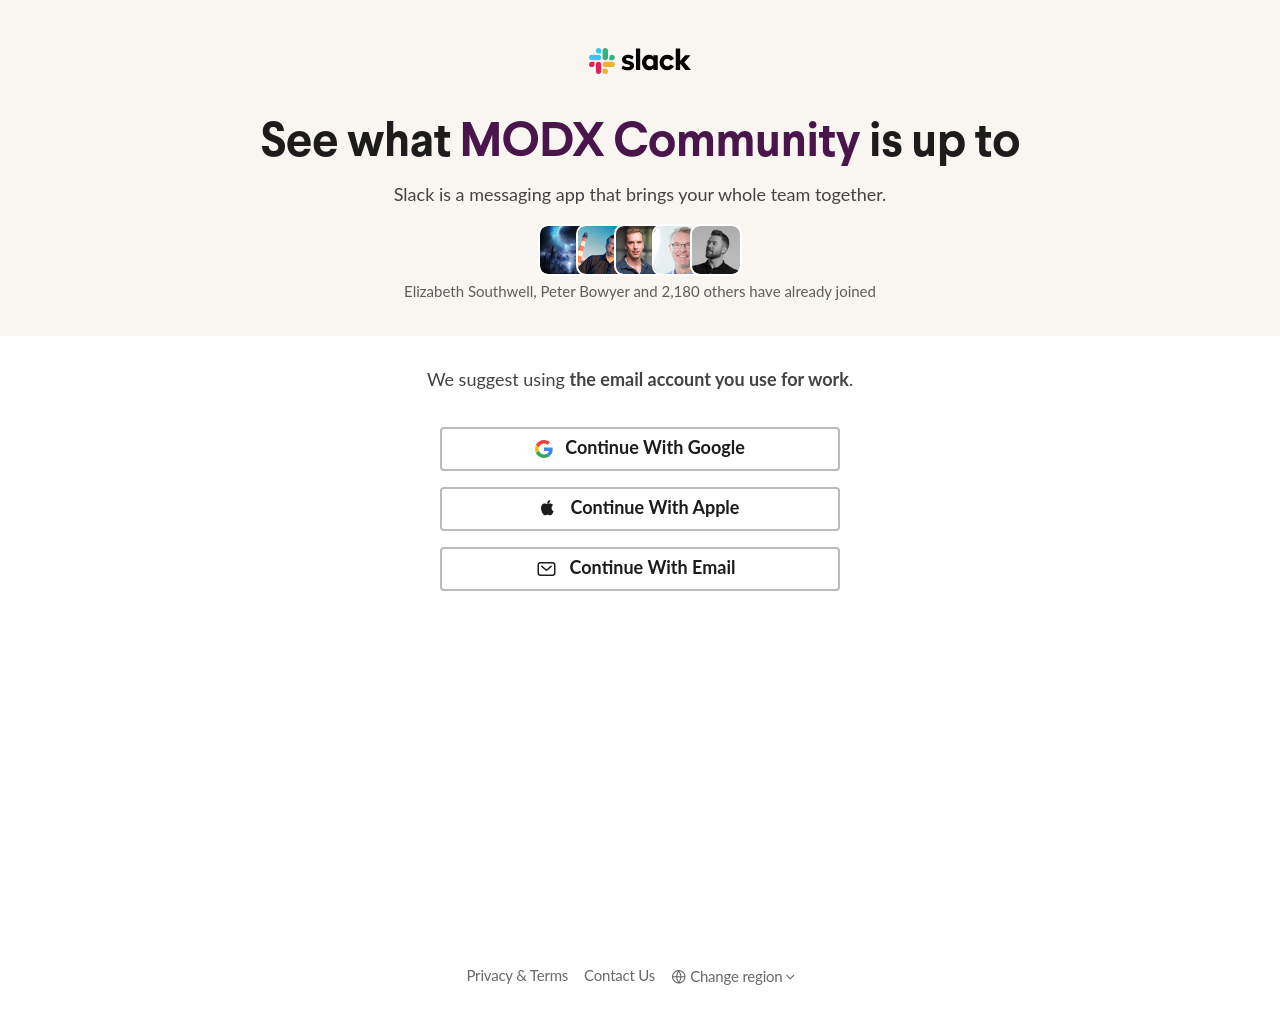 modx.org